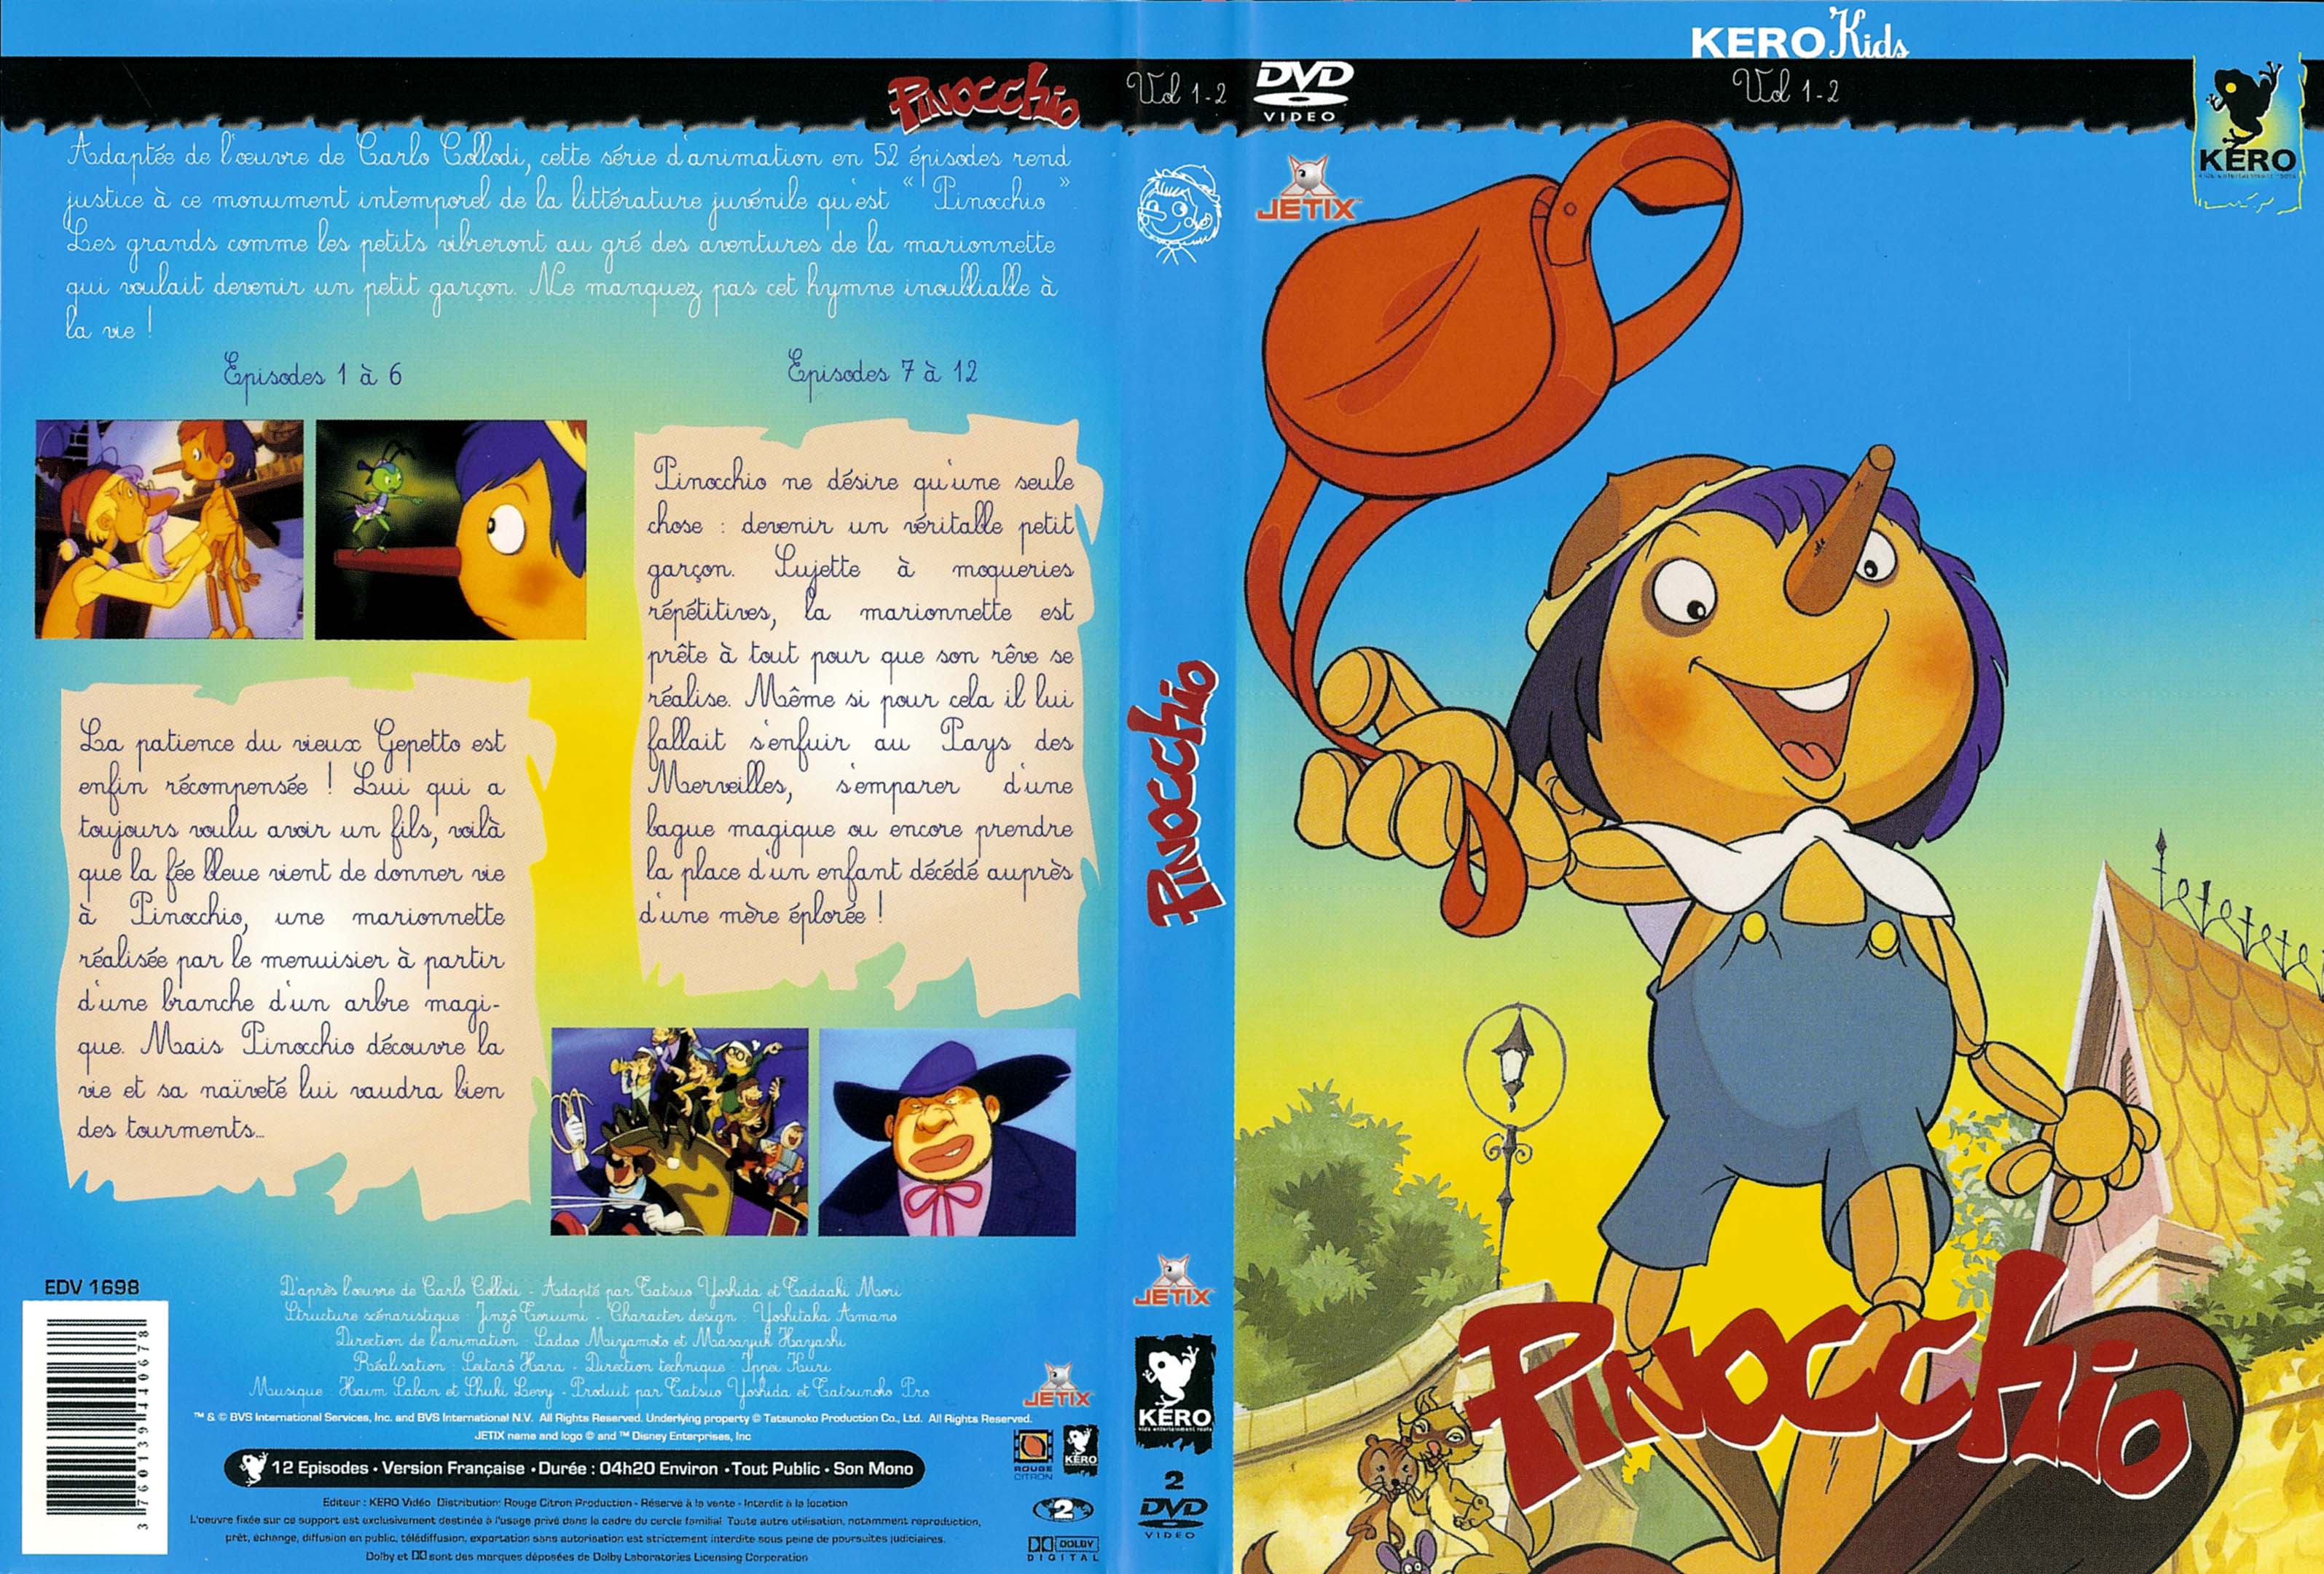 Jaquette DVD Pinocchio vol 1 et 2